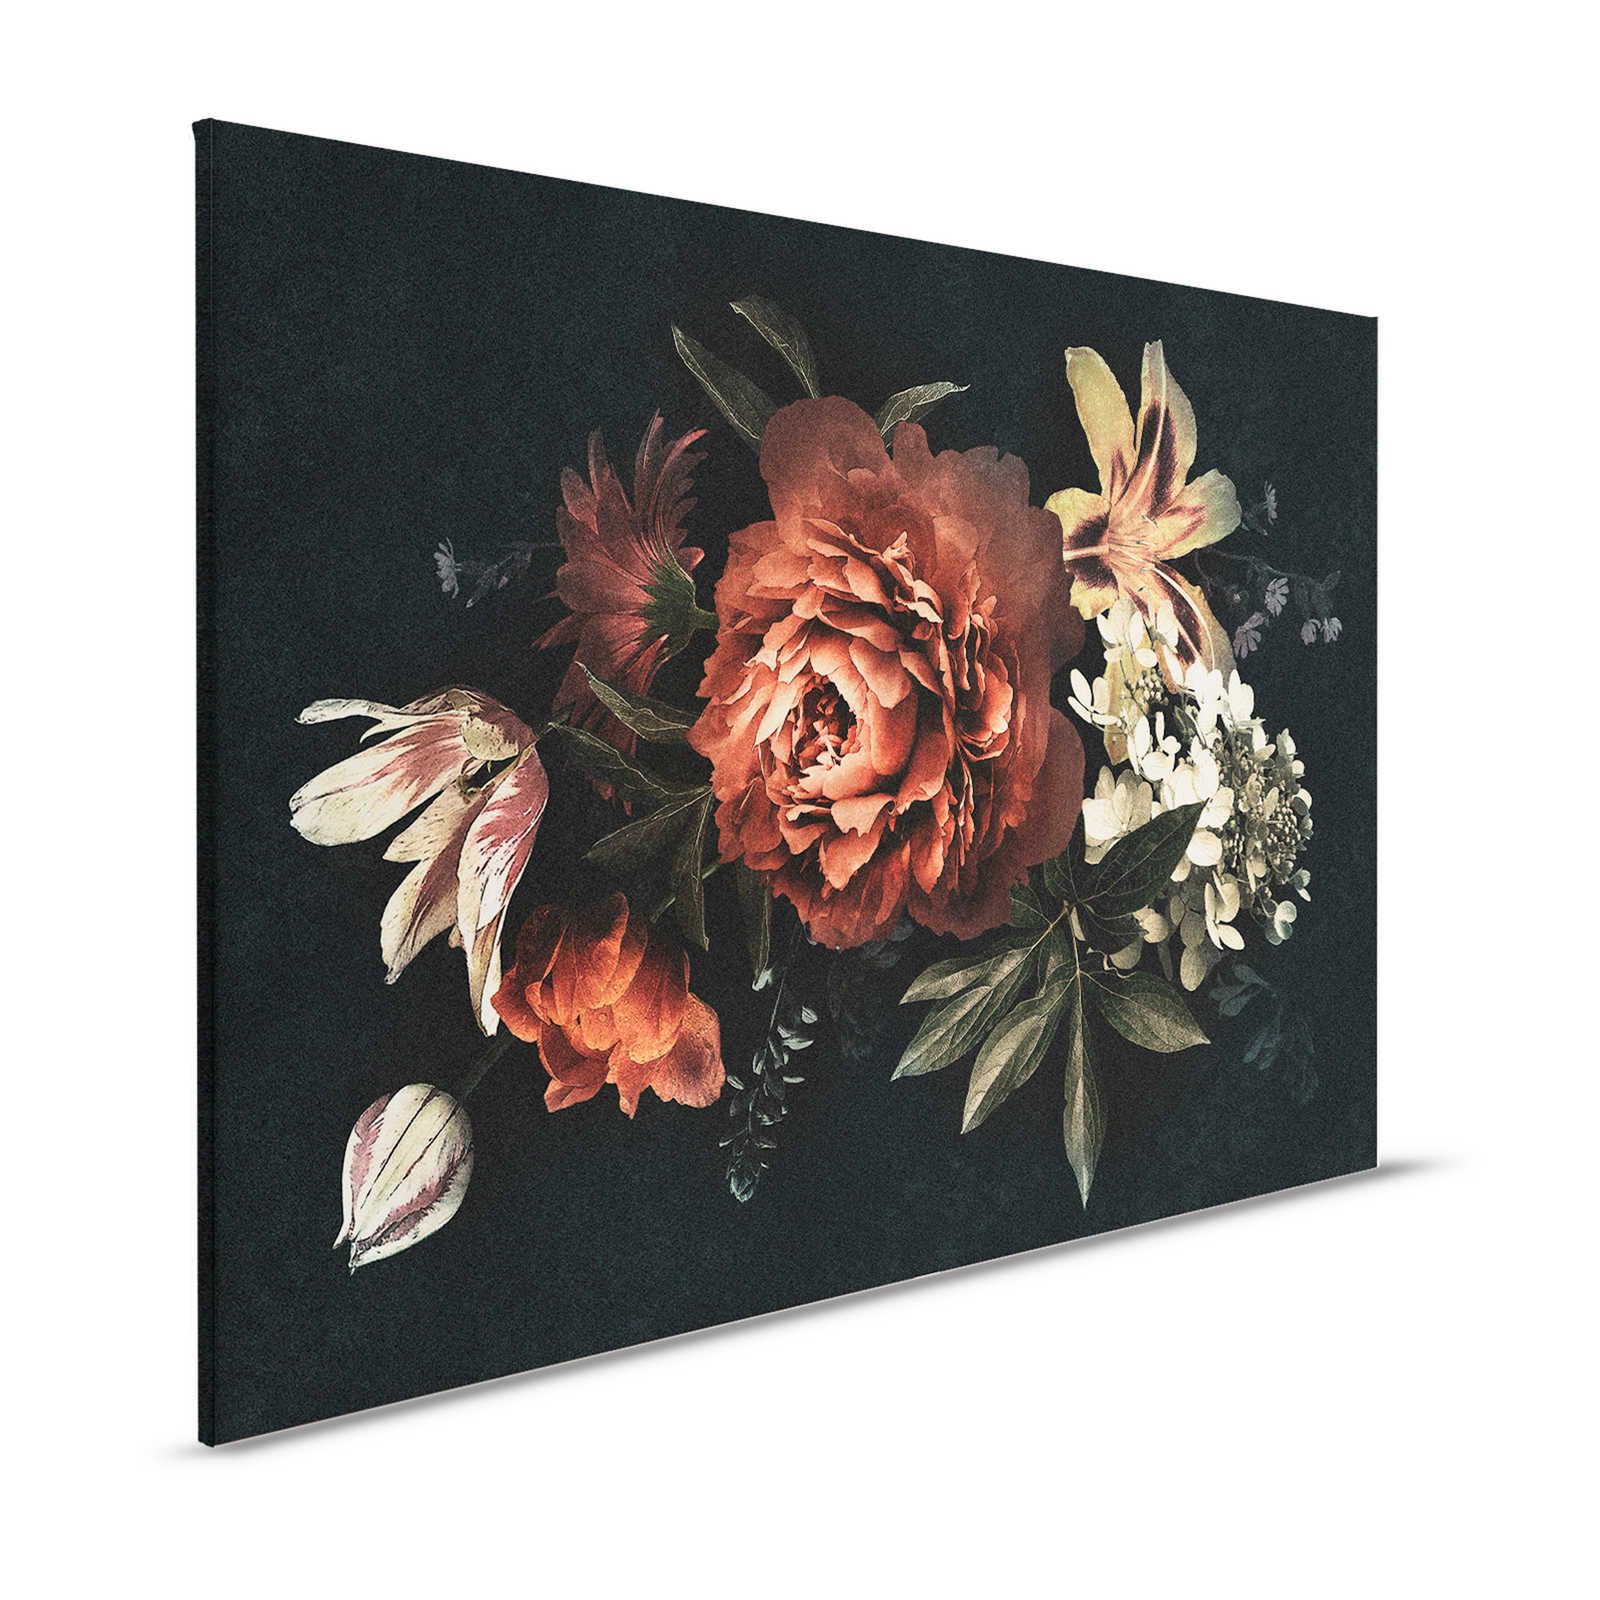 Drama queen 1 - Blumenstrauß Leinwandbild mit dunklem Hintergrund – 1,20 m x 0,80 m
